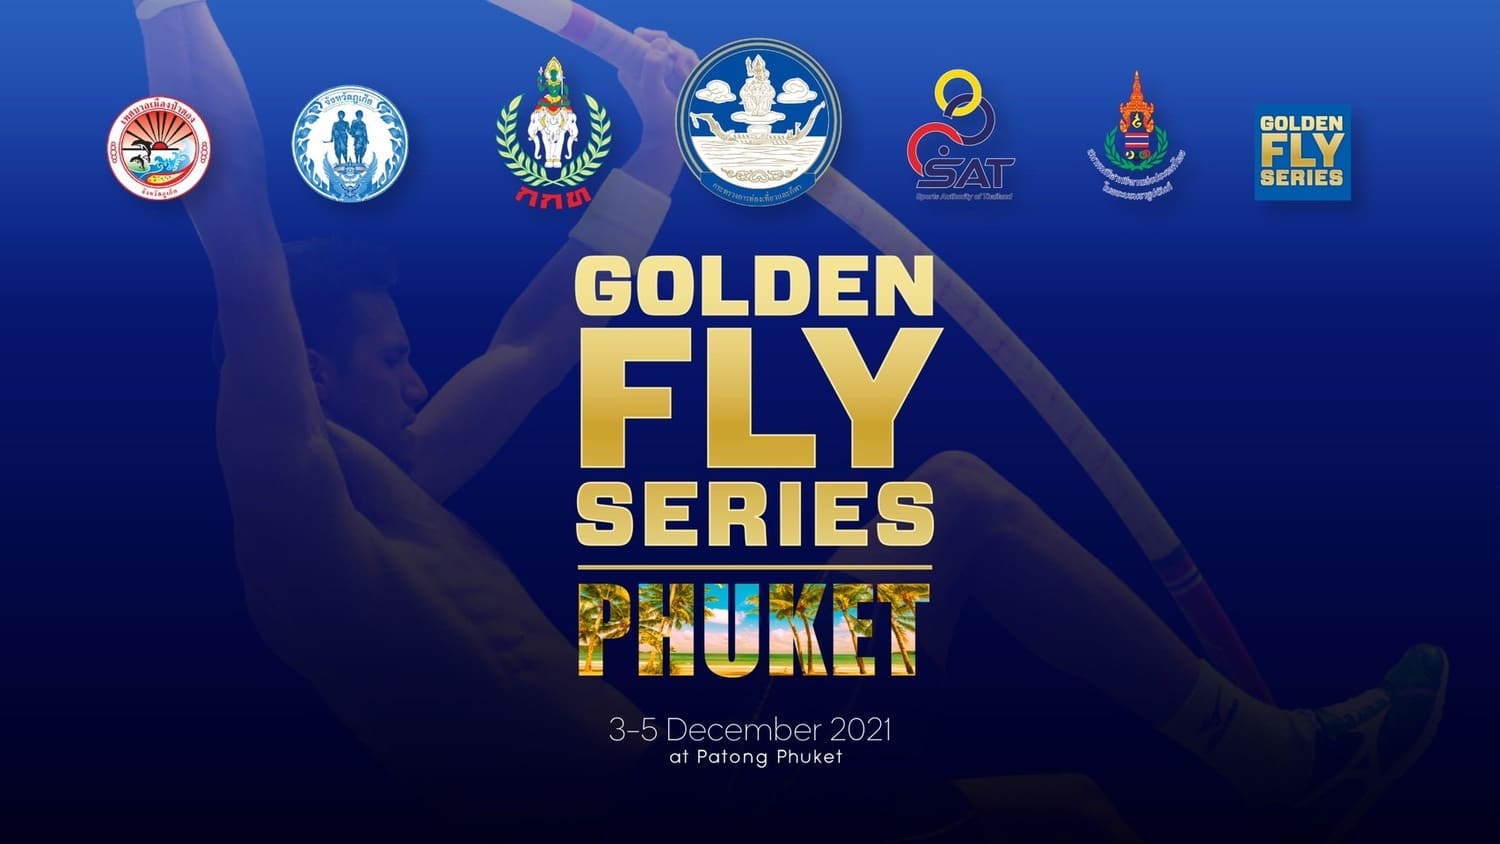 KV_Golden-Fly-Series-Phuket-2021-1.jpg